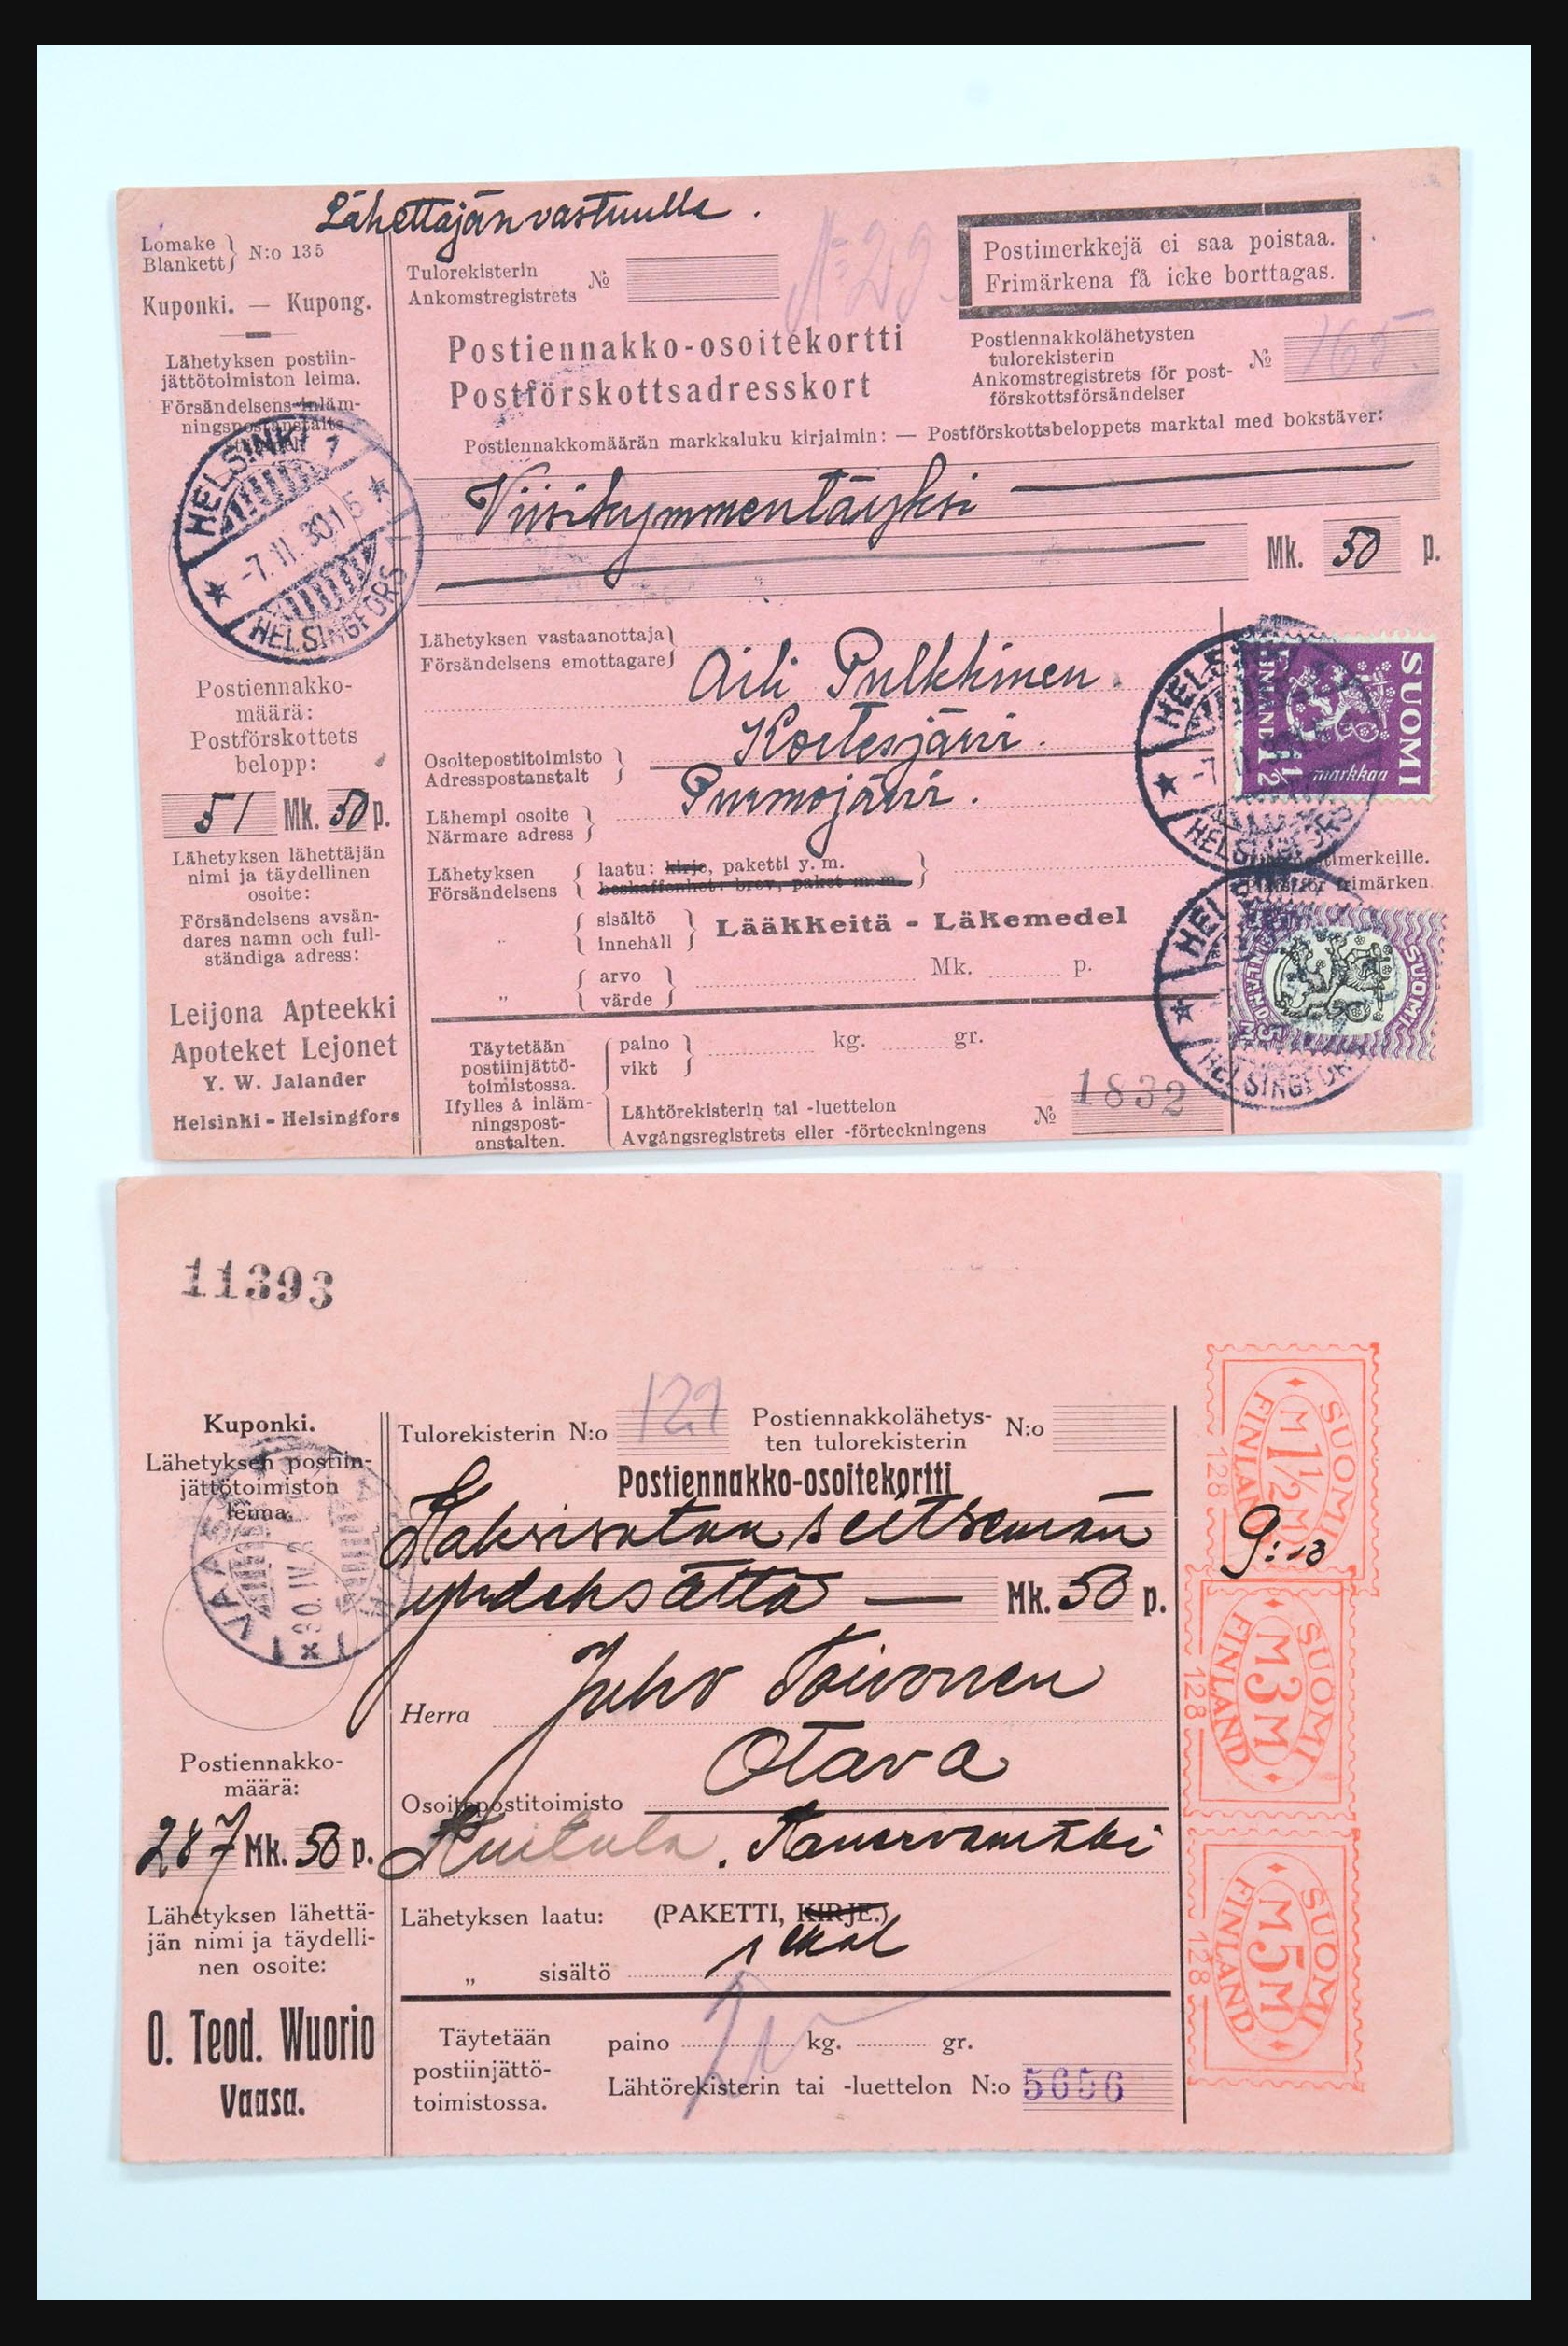 31658 060 - 31658 Finland brieven 1833-1960.